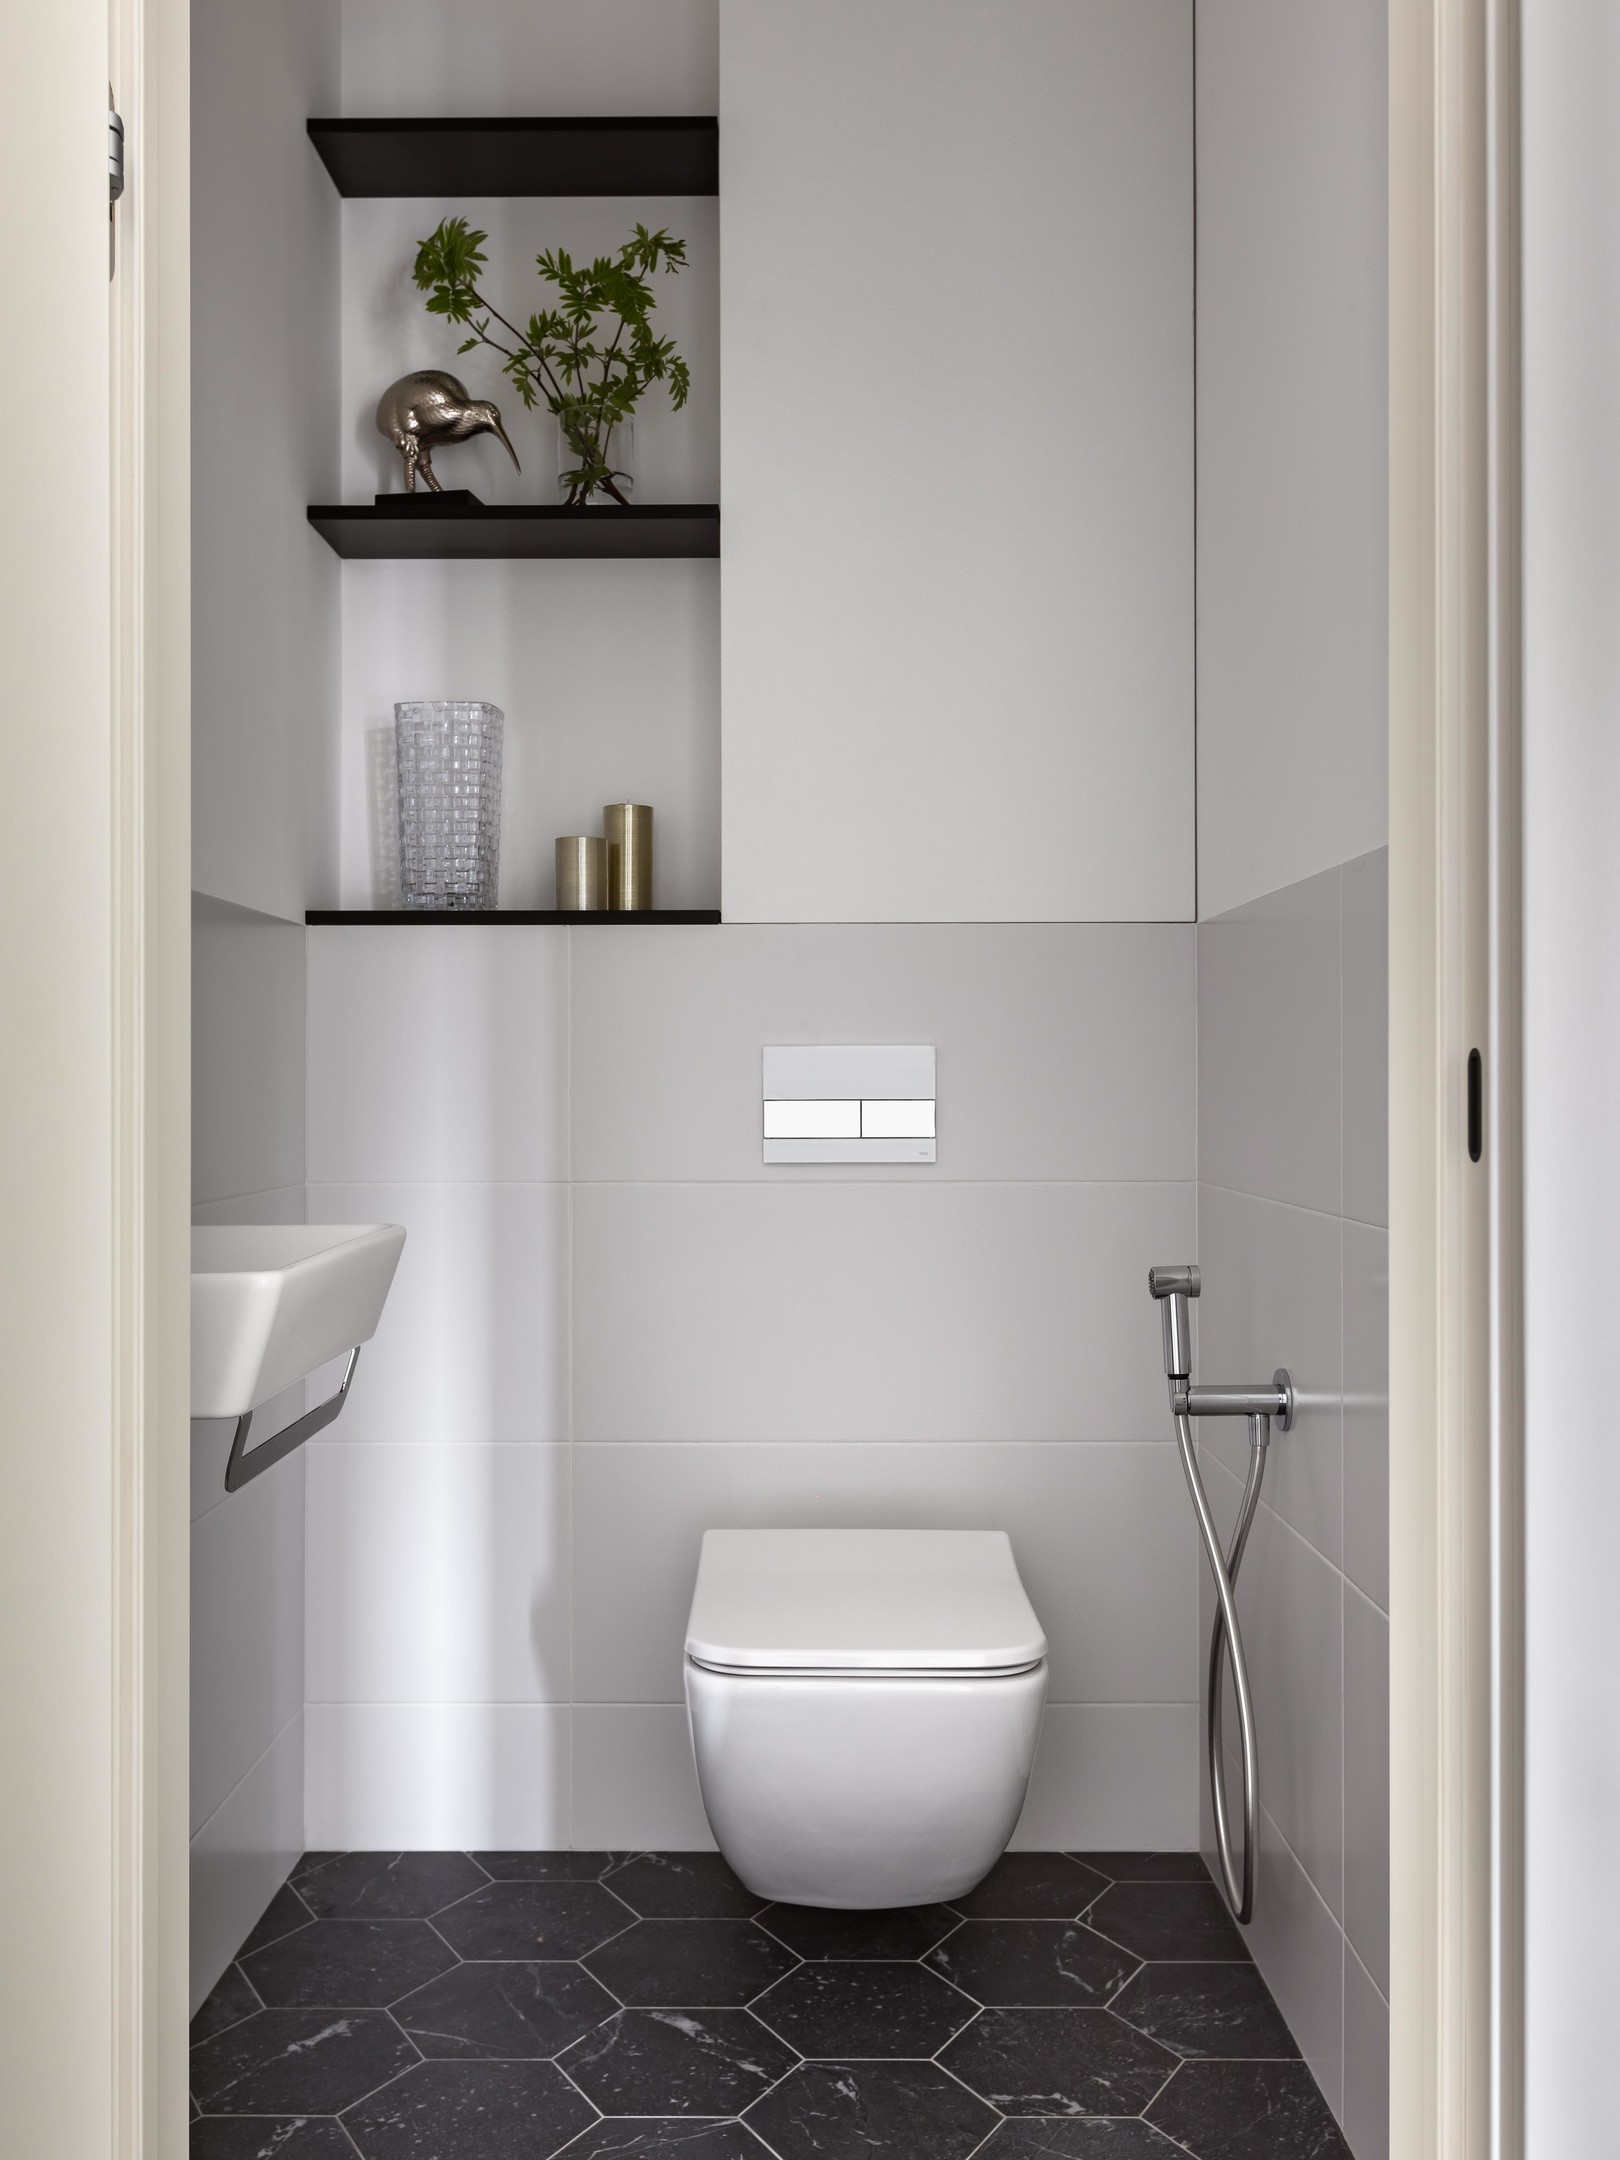 Khu vực toilet được thiết kế khá tương đồng về vật liệu với lối vào, tường sơn màu trắng kết hợp gạch ốp xám nhạt, phần sàn lát gạch tổ ong. Toilet thiết kế gắn tường để giải phóng diện tích mặt sàn. Hốc tường phía trên được tận dụng để trang trí vài tác phẩm chủ nhân yêu thích.